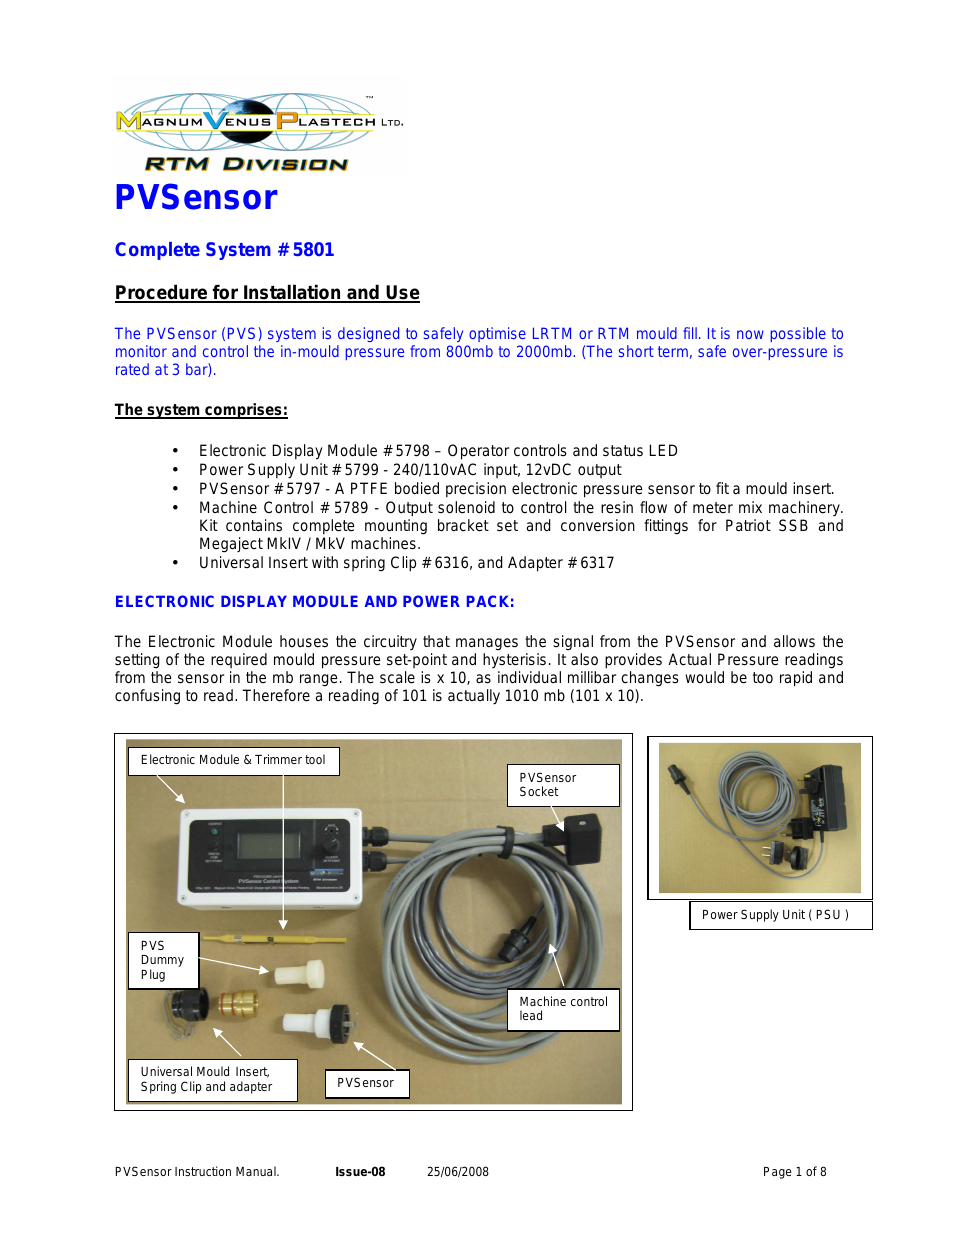 PVSensor